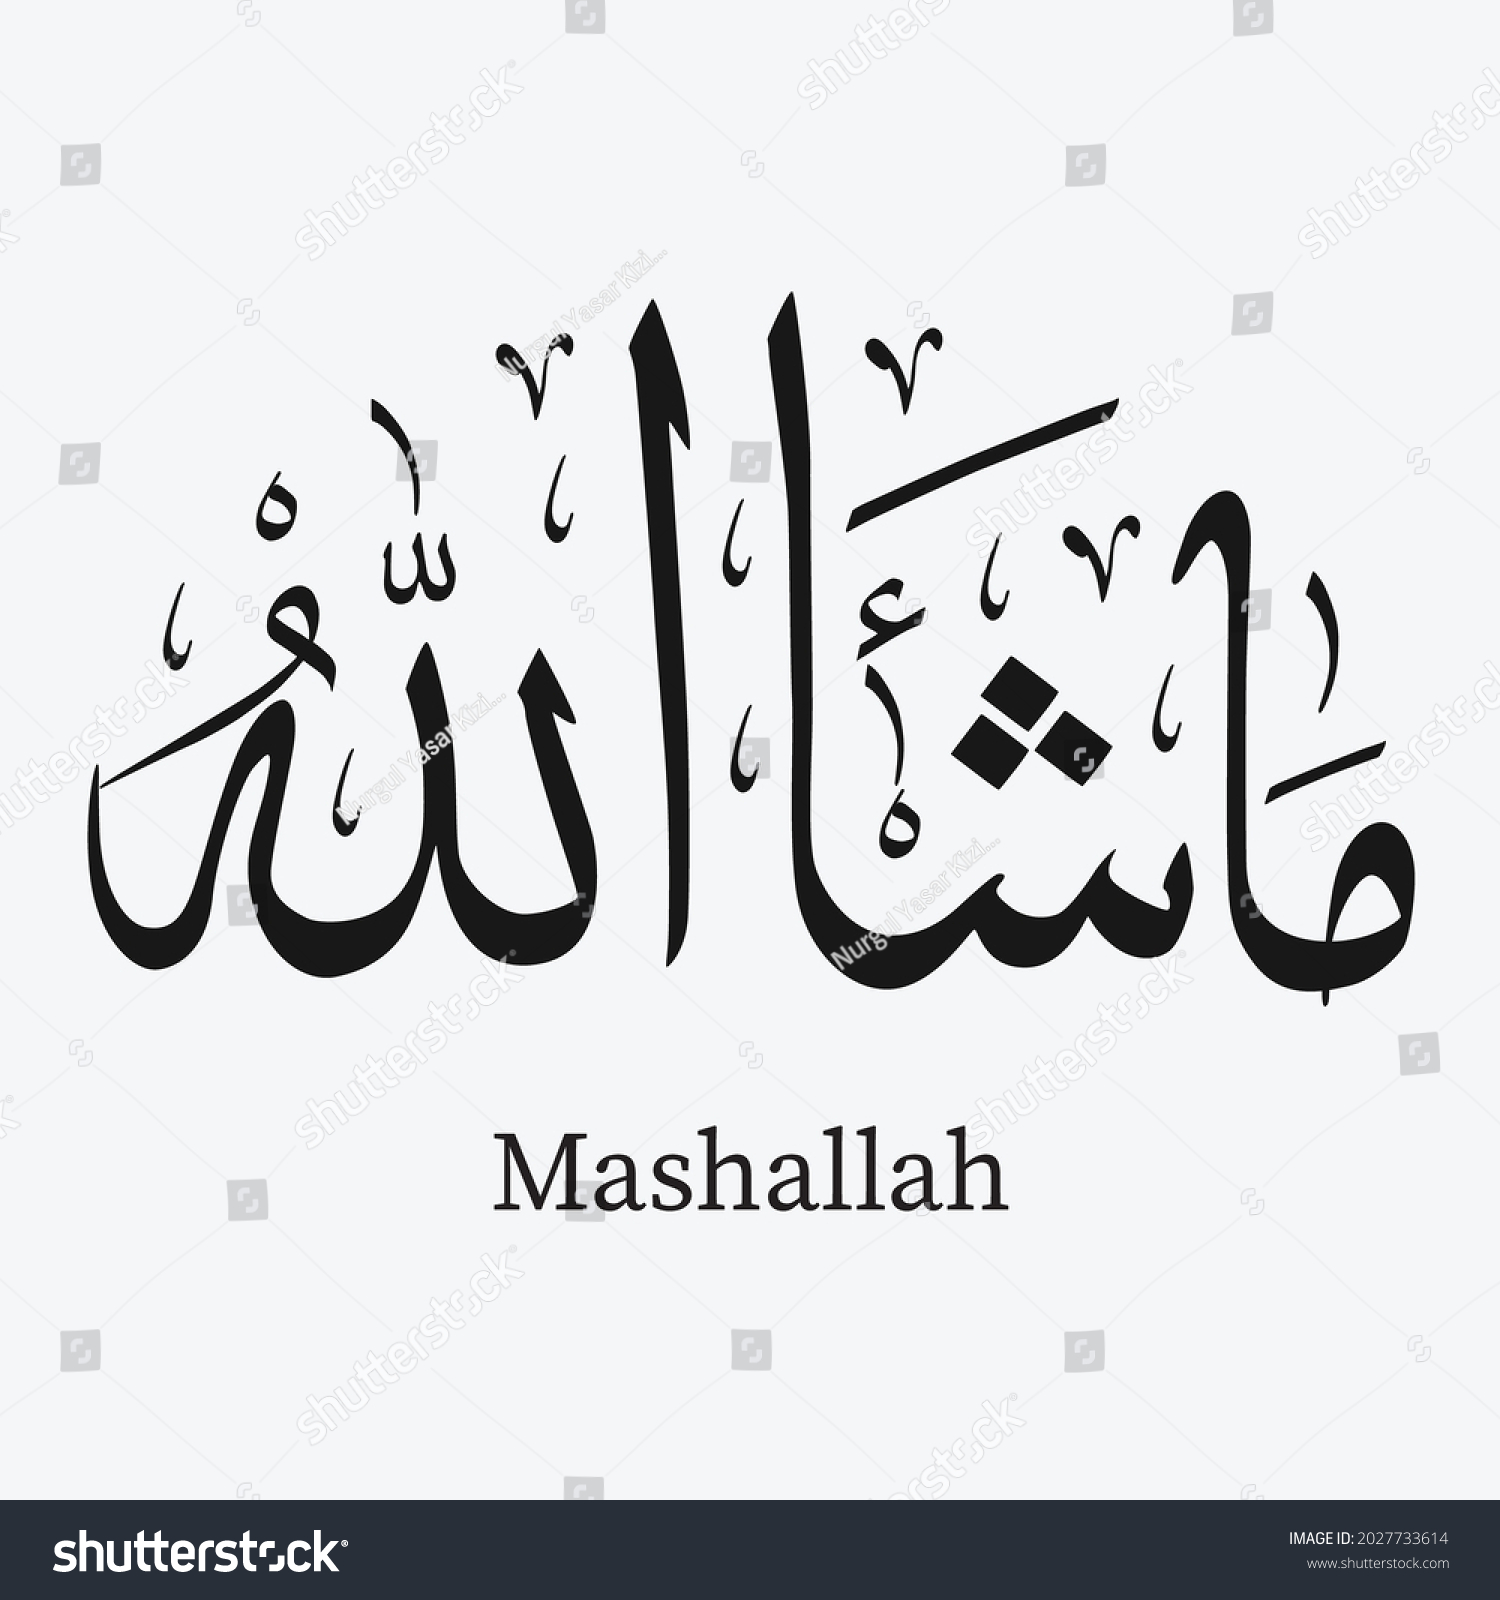 아랍어 문구 '마샬라'